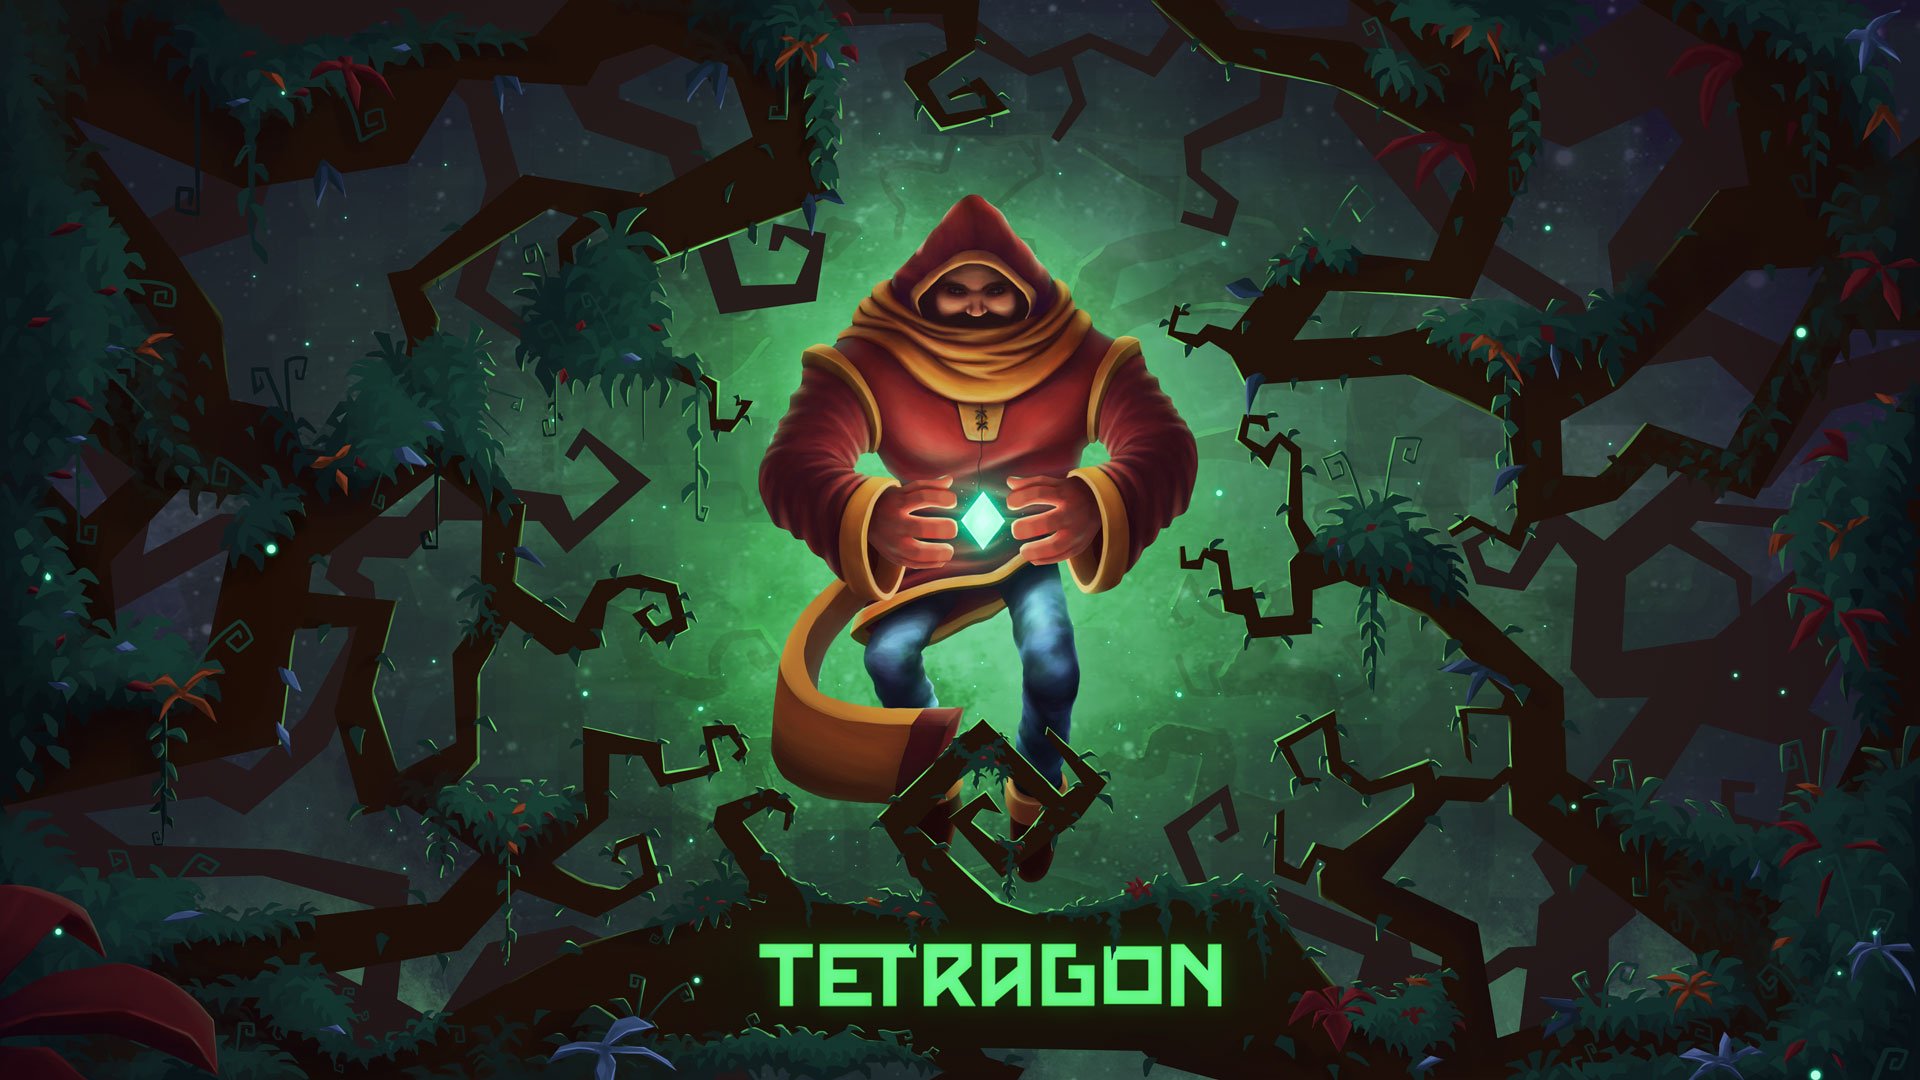 Tetragon 是一款激發你情感的益智遊戲